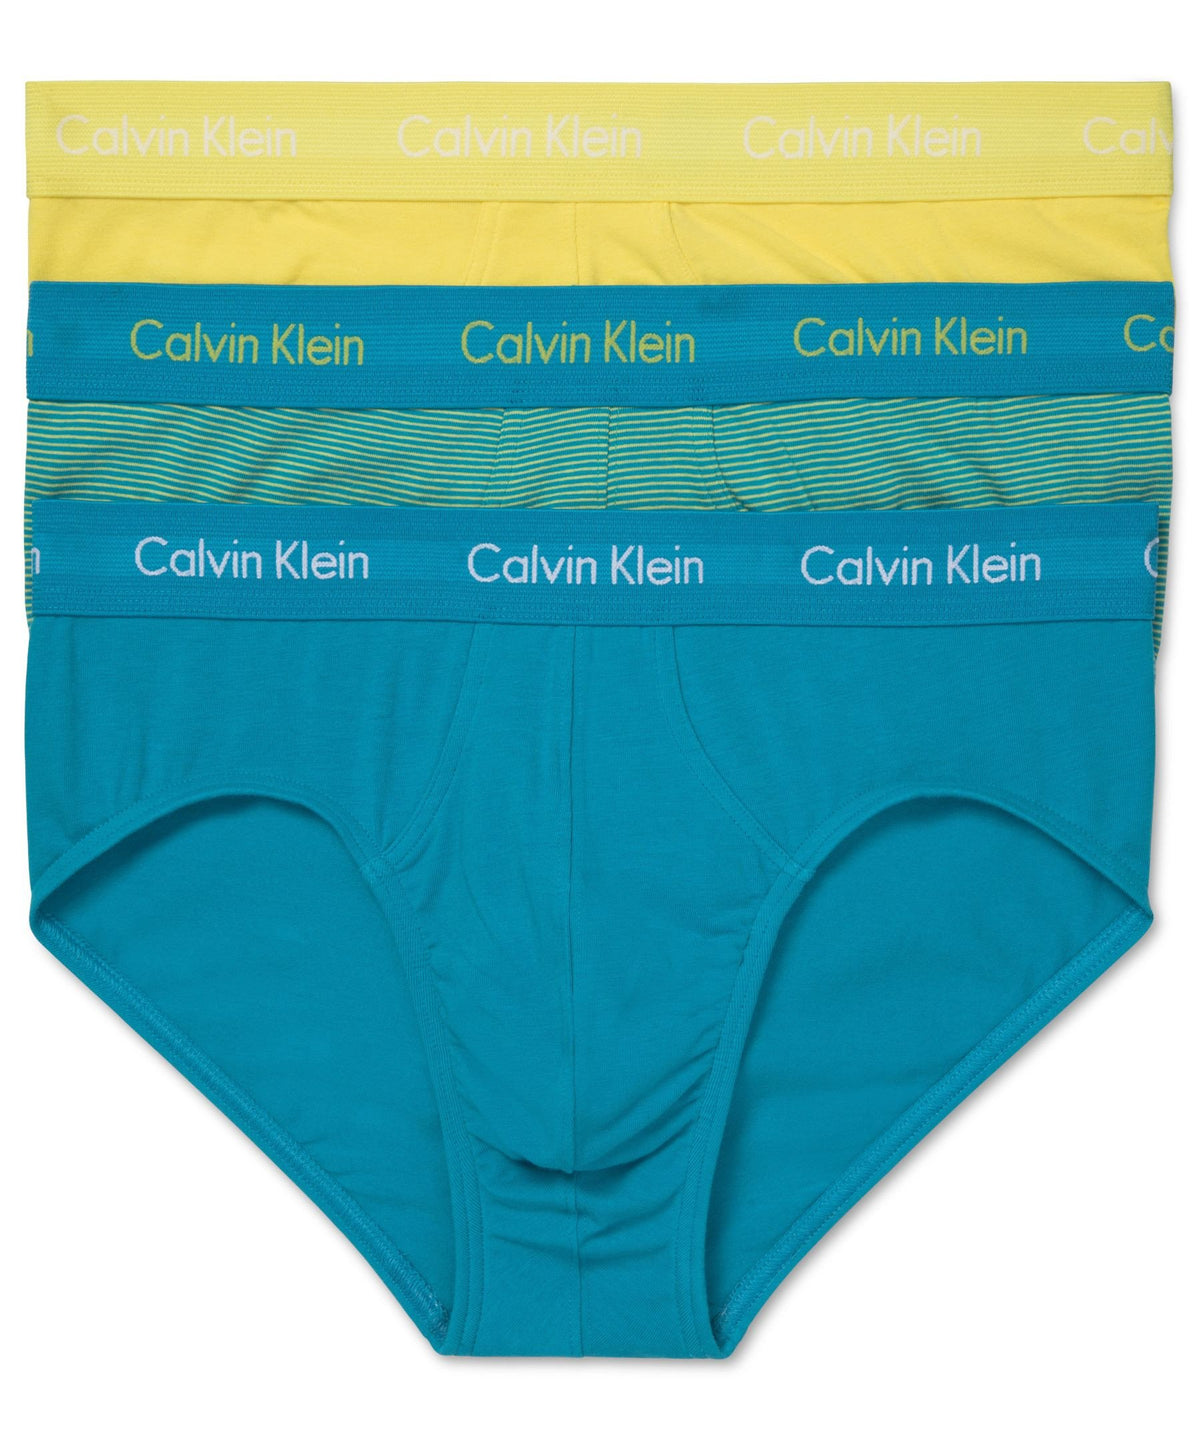 Calvin Klein Cotton Stretch Hip Briefs 3-Pack